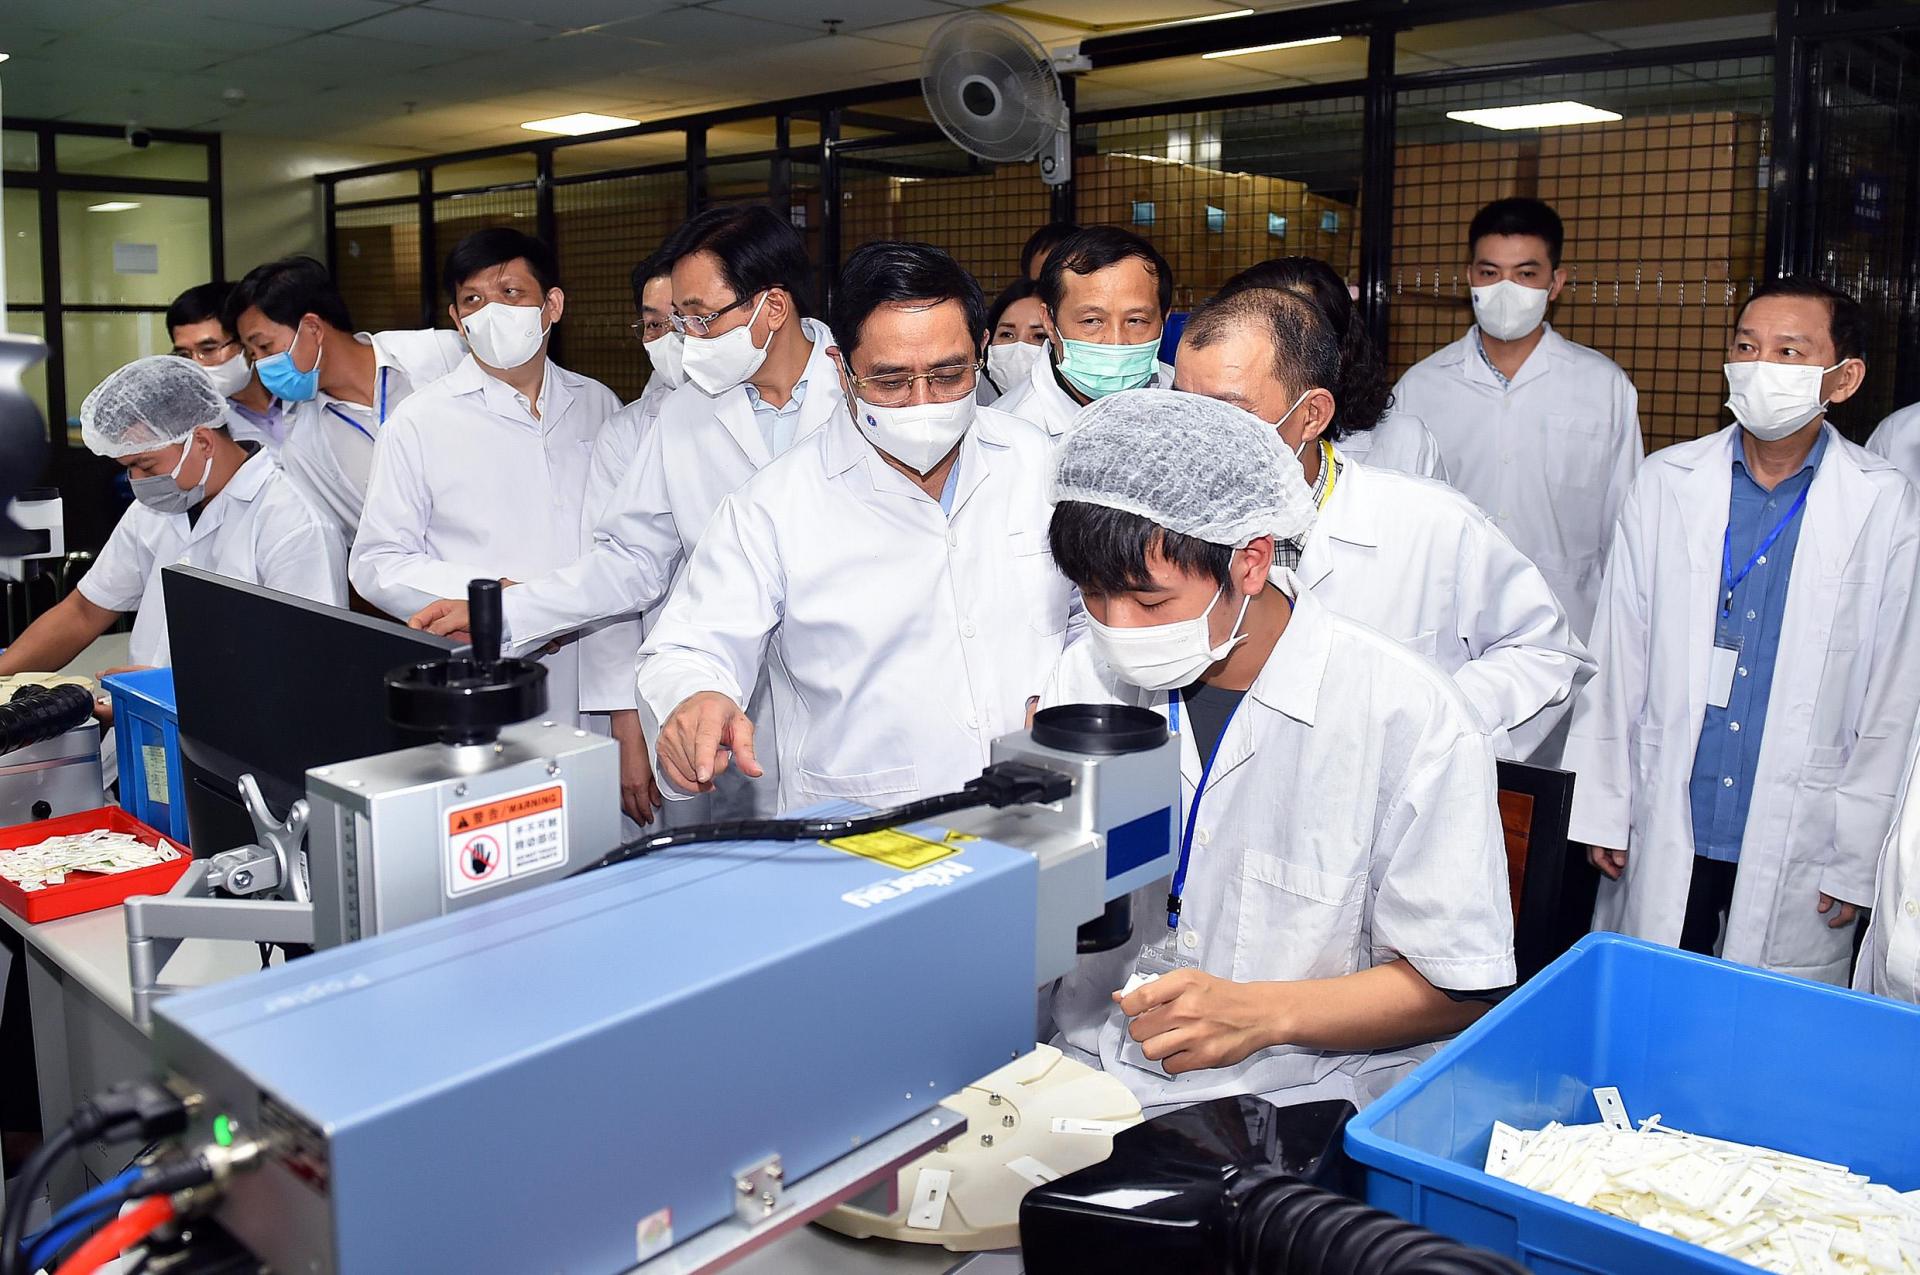 Thủ tướng đã tới thăm và làm việc tại Công ty Medicon (xã An Khánh, huyện Hoài Đức, Hà Nội) - chuyên sản xuất test thử (xét nghiệm nhanh) phục vụ các nhu cầu y học -Ảnh: VGP